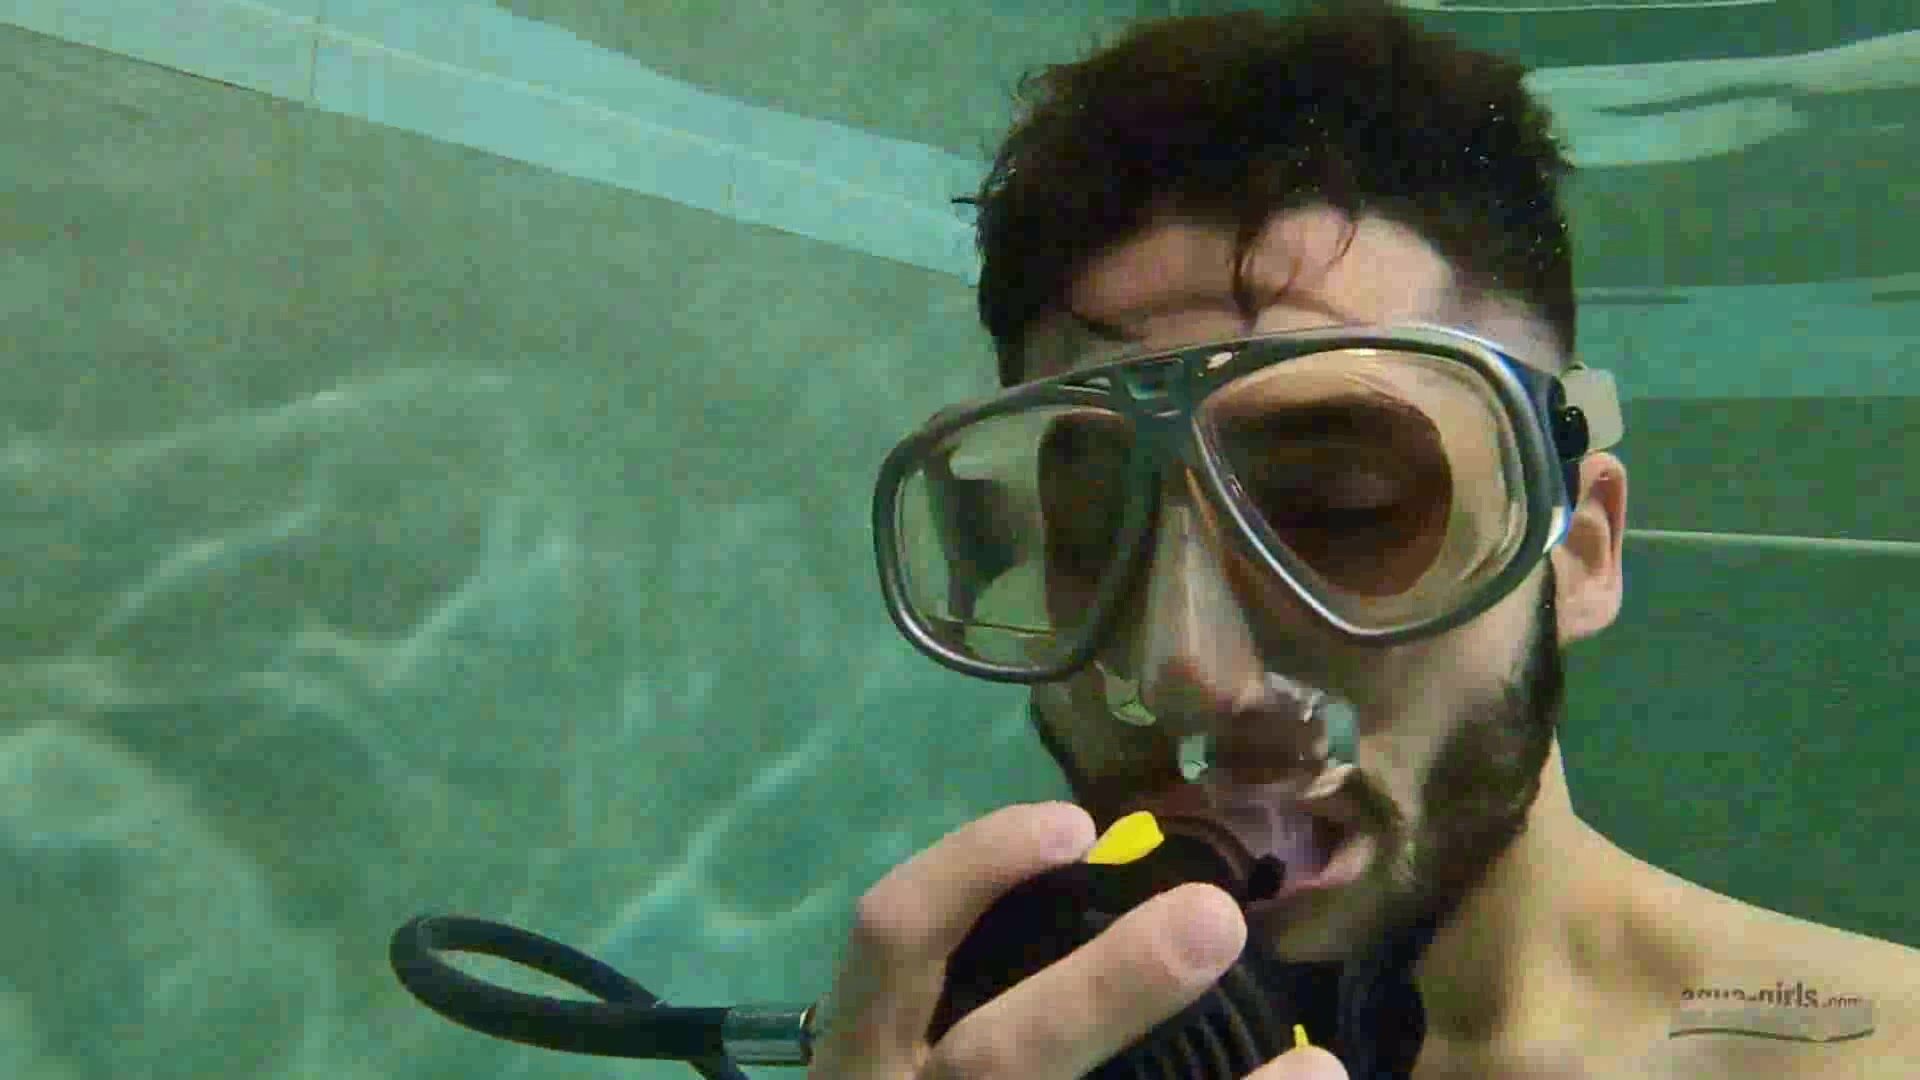 Speedo hottie in trouble underwater